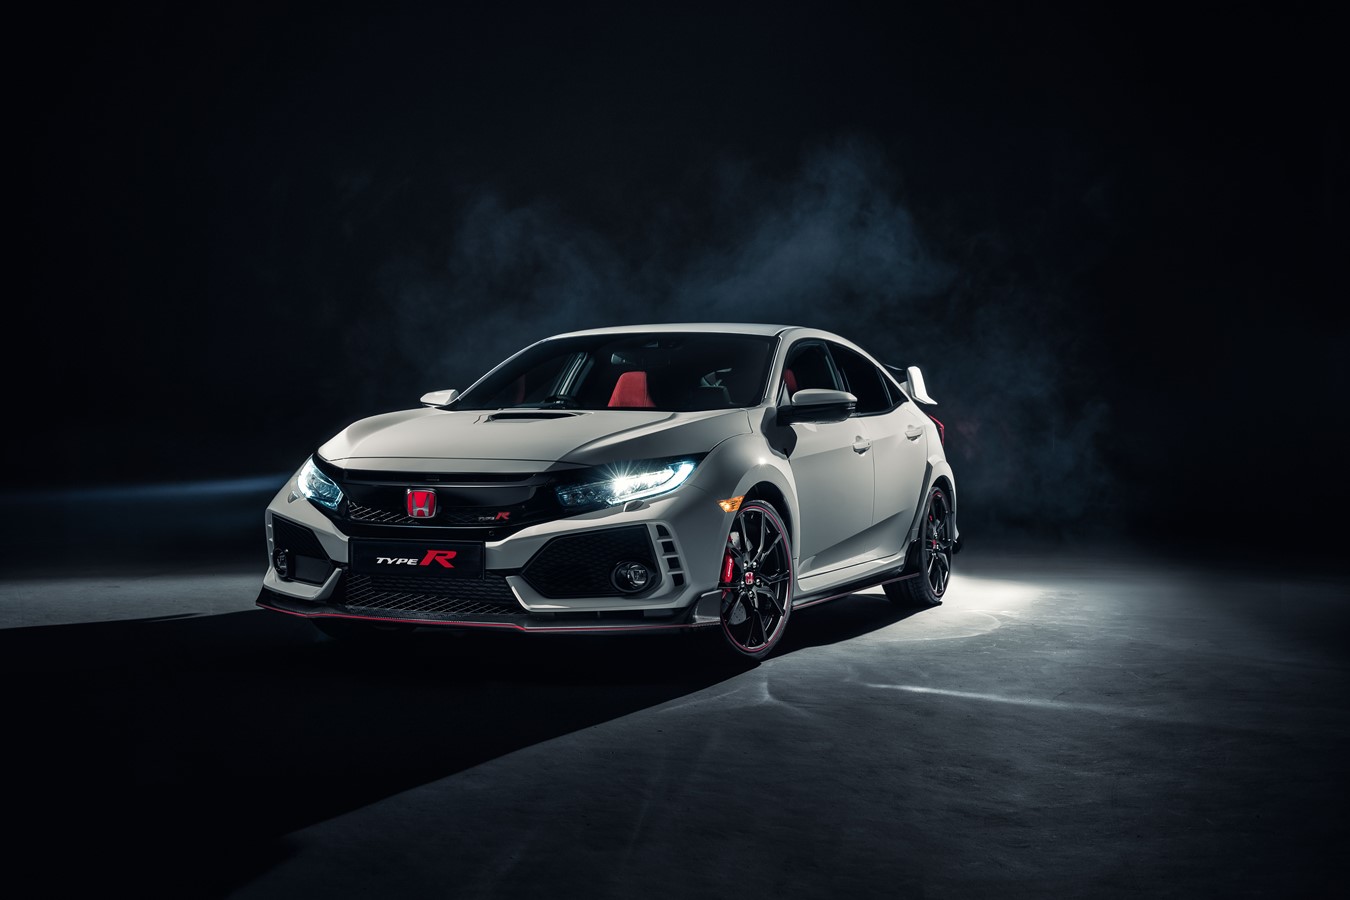 Weltpremiere des neuen Honda Civic Type R auf dem Genfer Automobilsalon